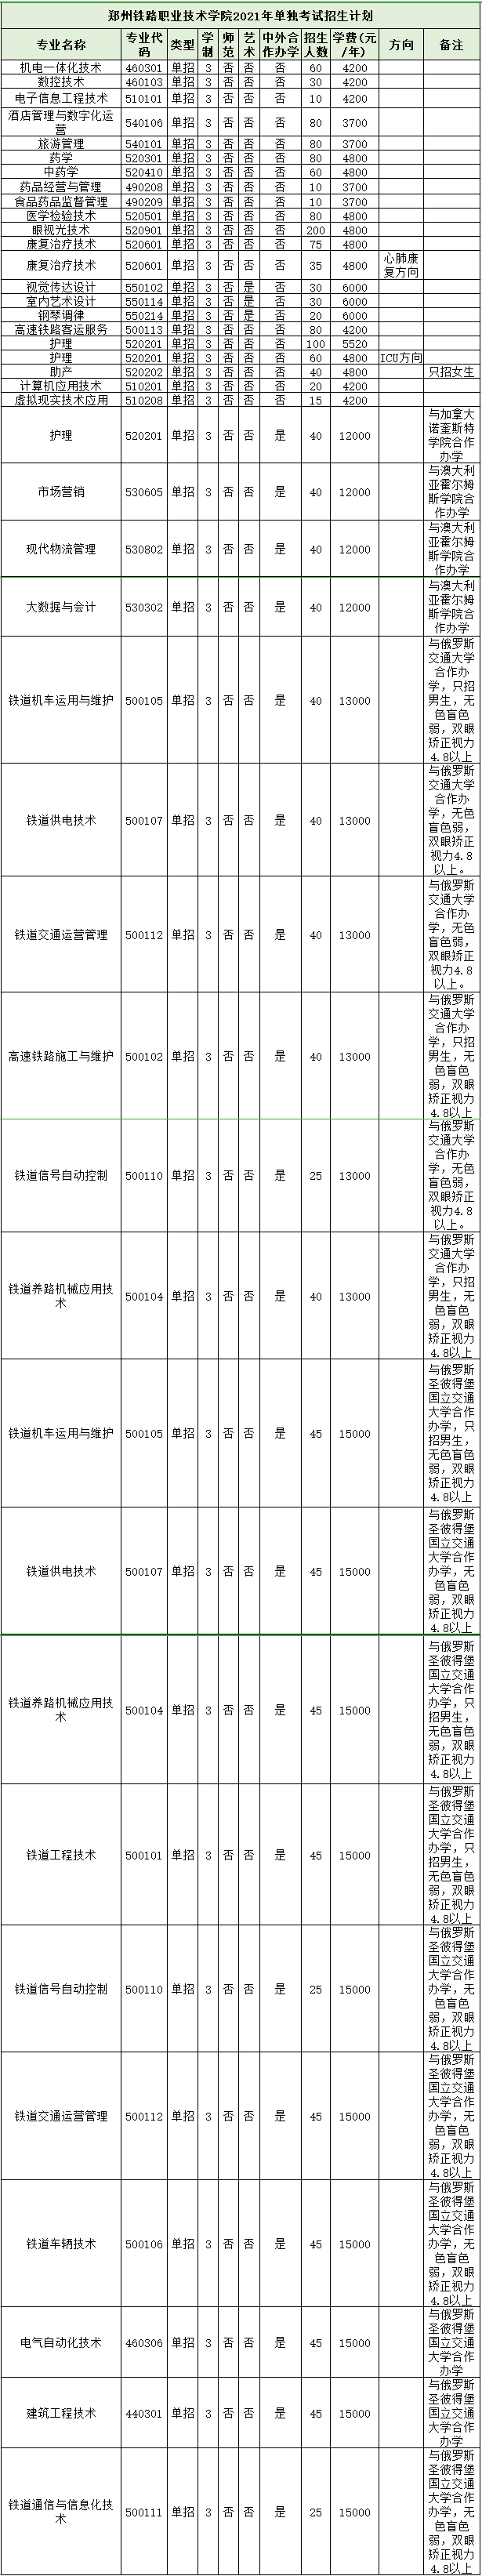 郑州铁路职业技术学院.jpg